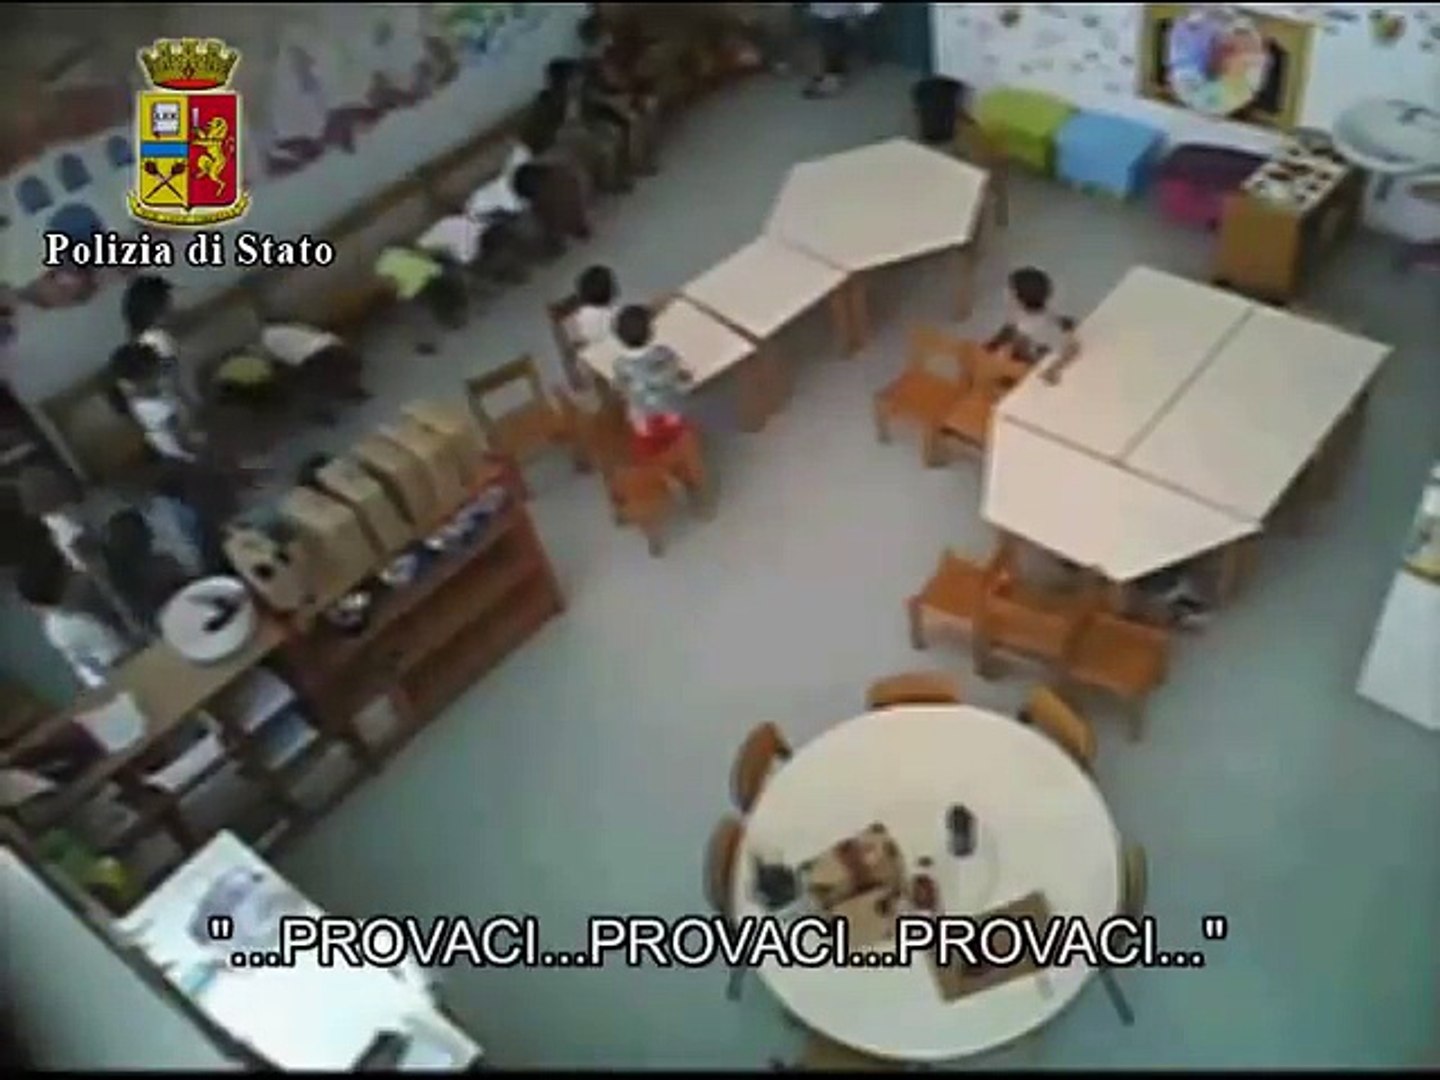 Vidéo : scandale en Italie, des enfants maltraités par leur maîtresse